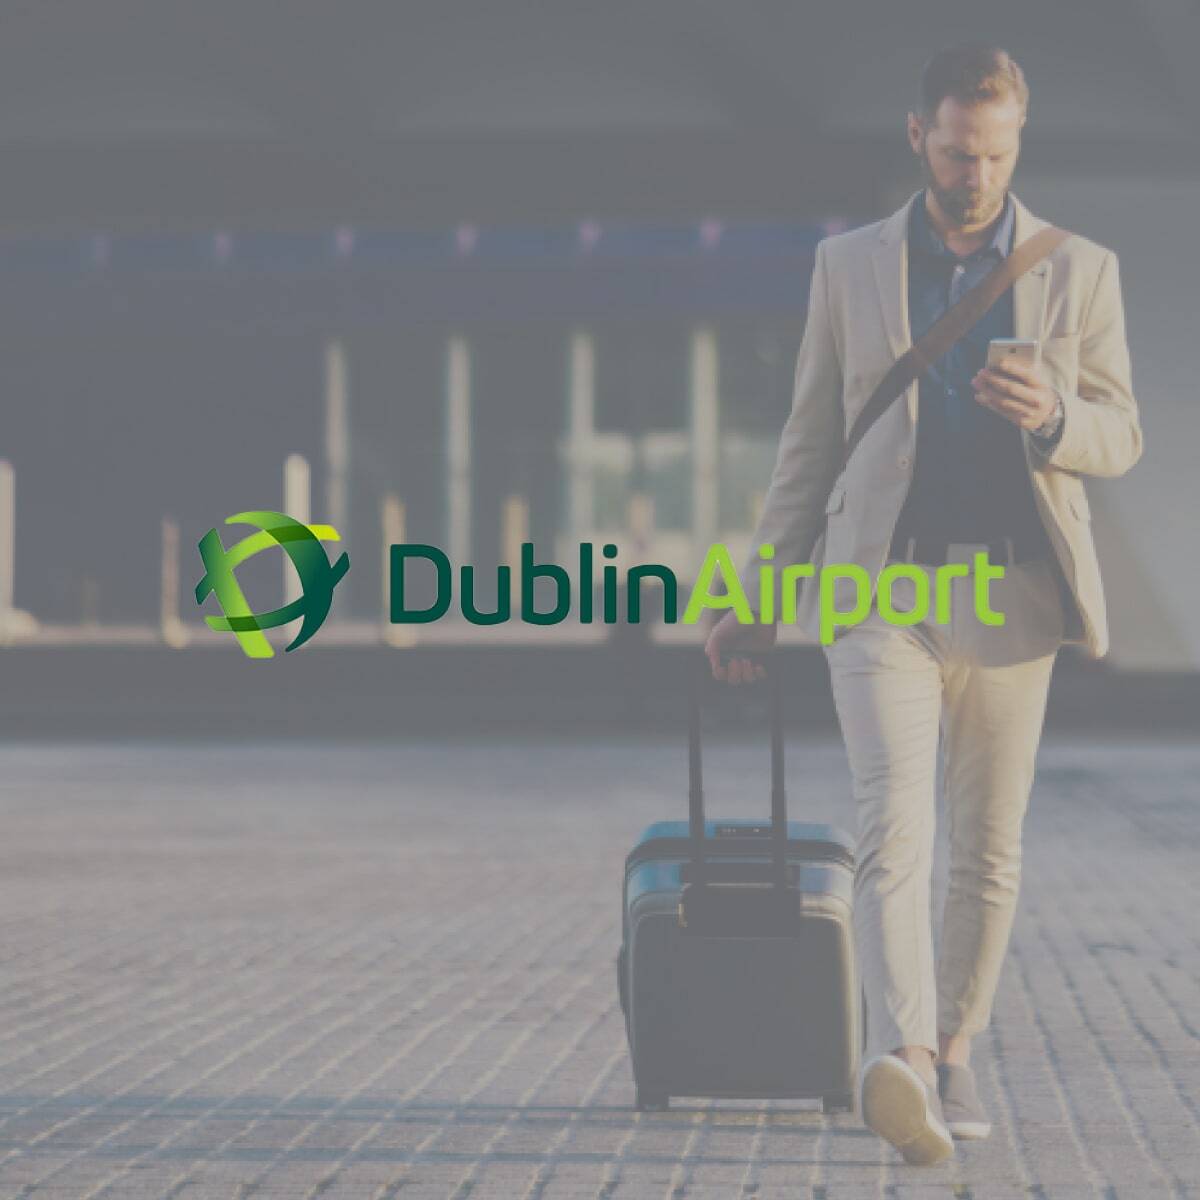 Square - Dublin Airport-min